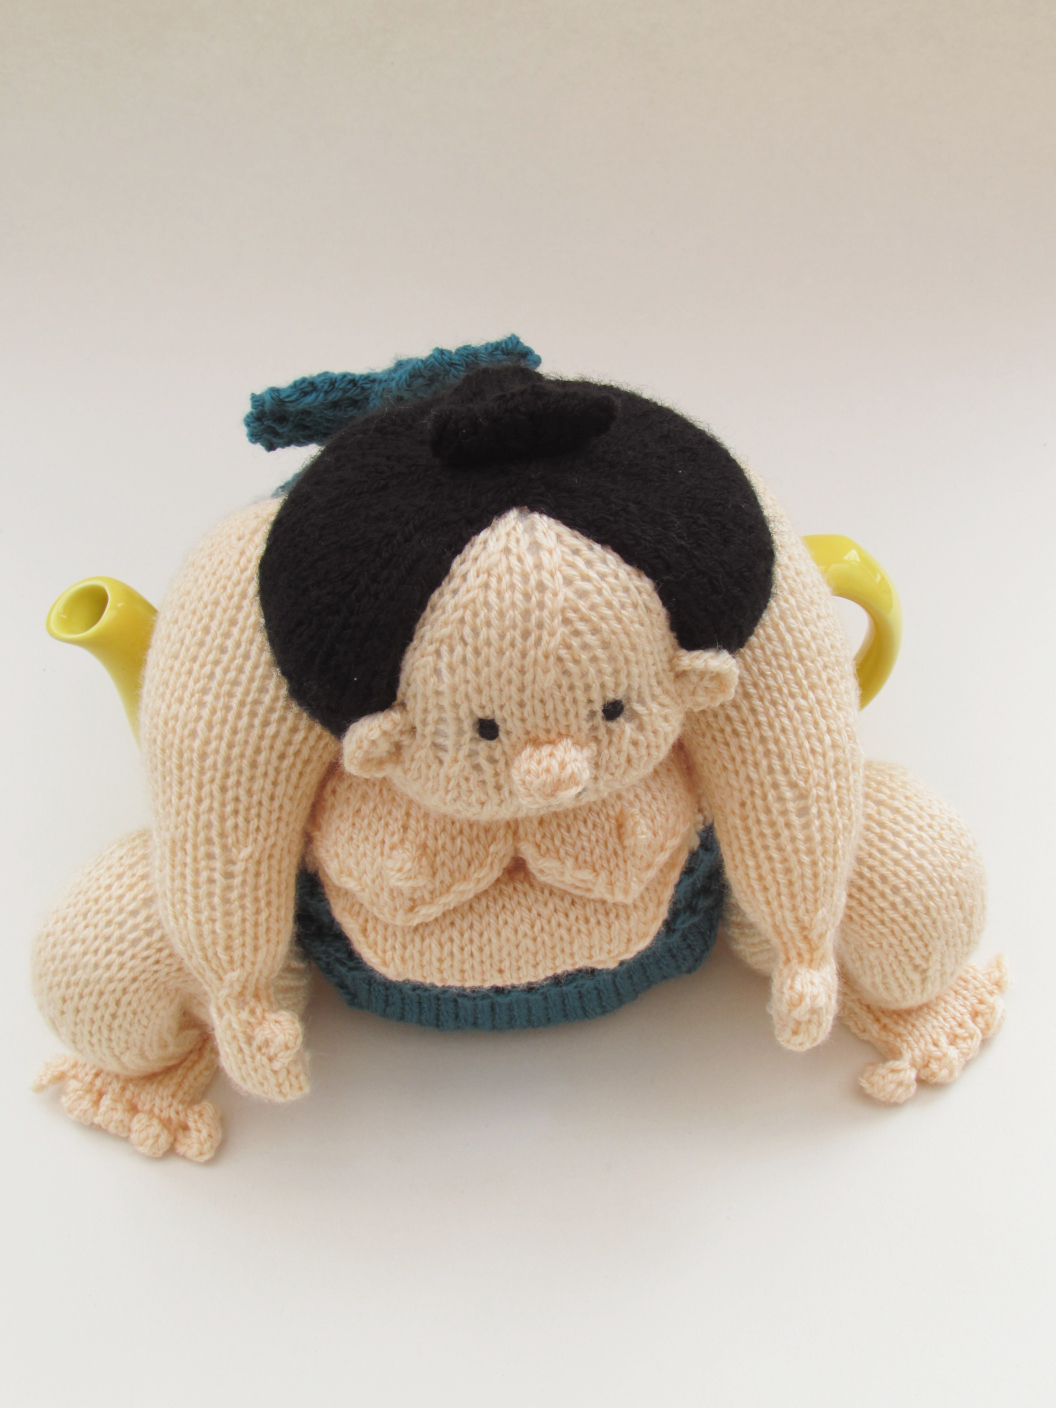 Sumo Wrestler knitting pattern